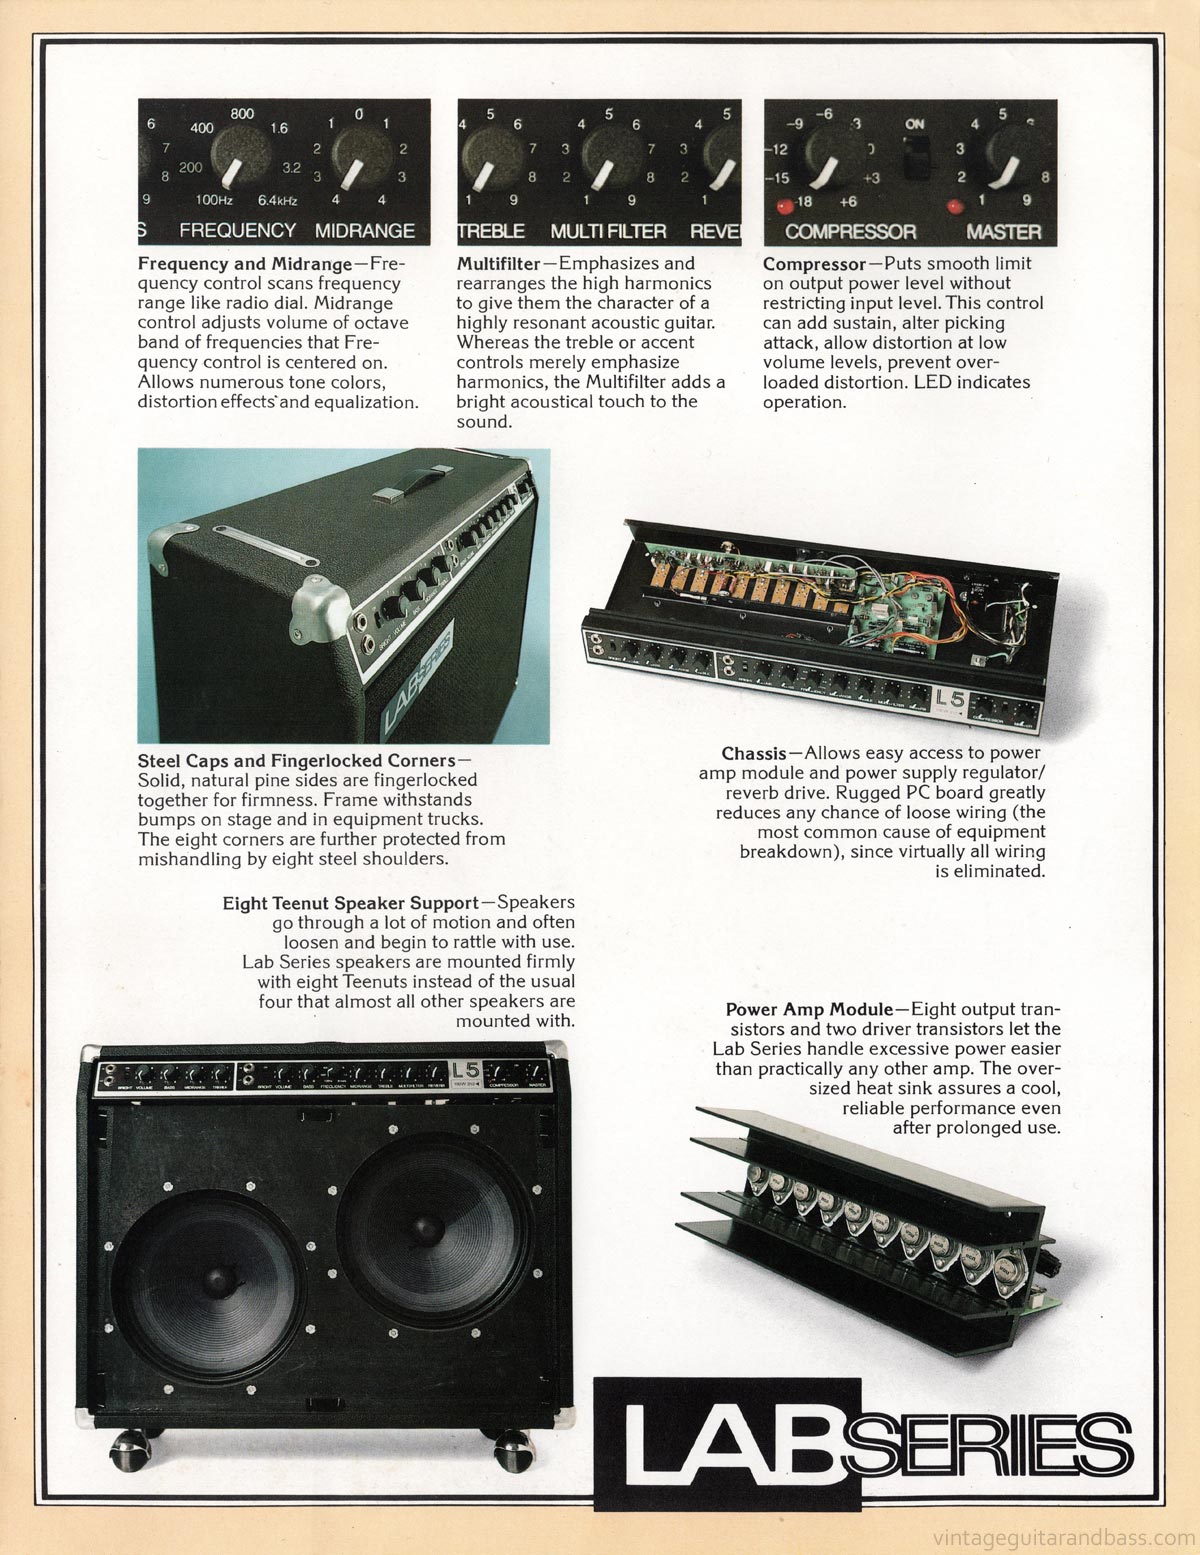 1977 Lab Series L9 promo sheet, description